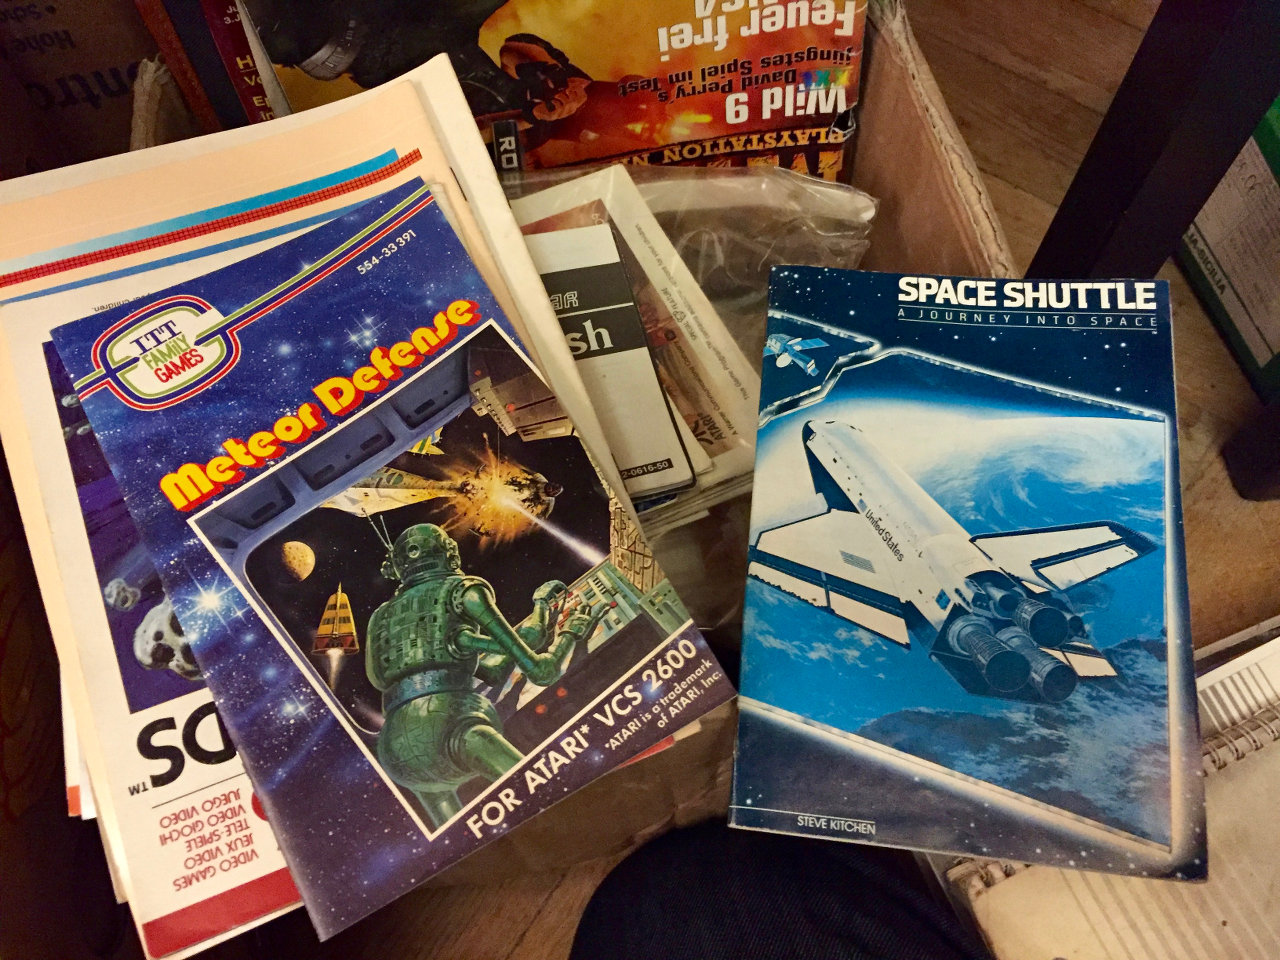 Anleitungen zu ITT-Games und dem legendären Space Shuttle von Steve Kitchen. (Bild: André Eymann)